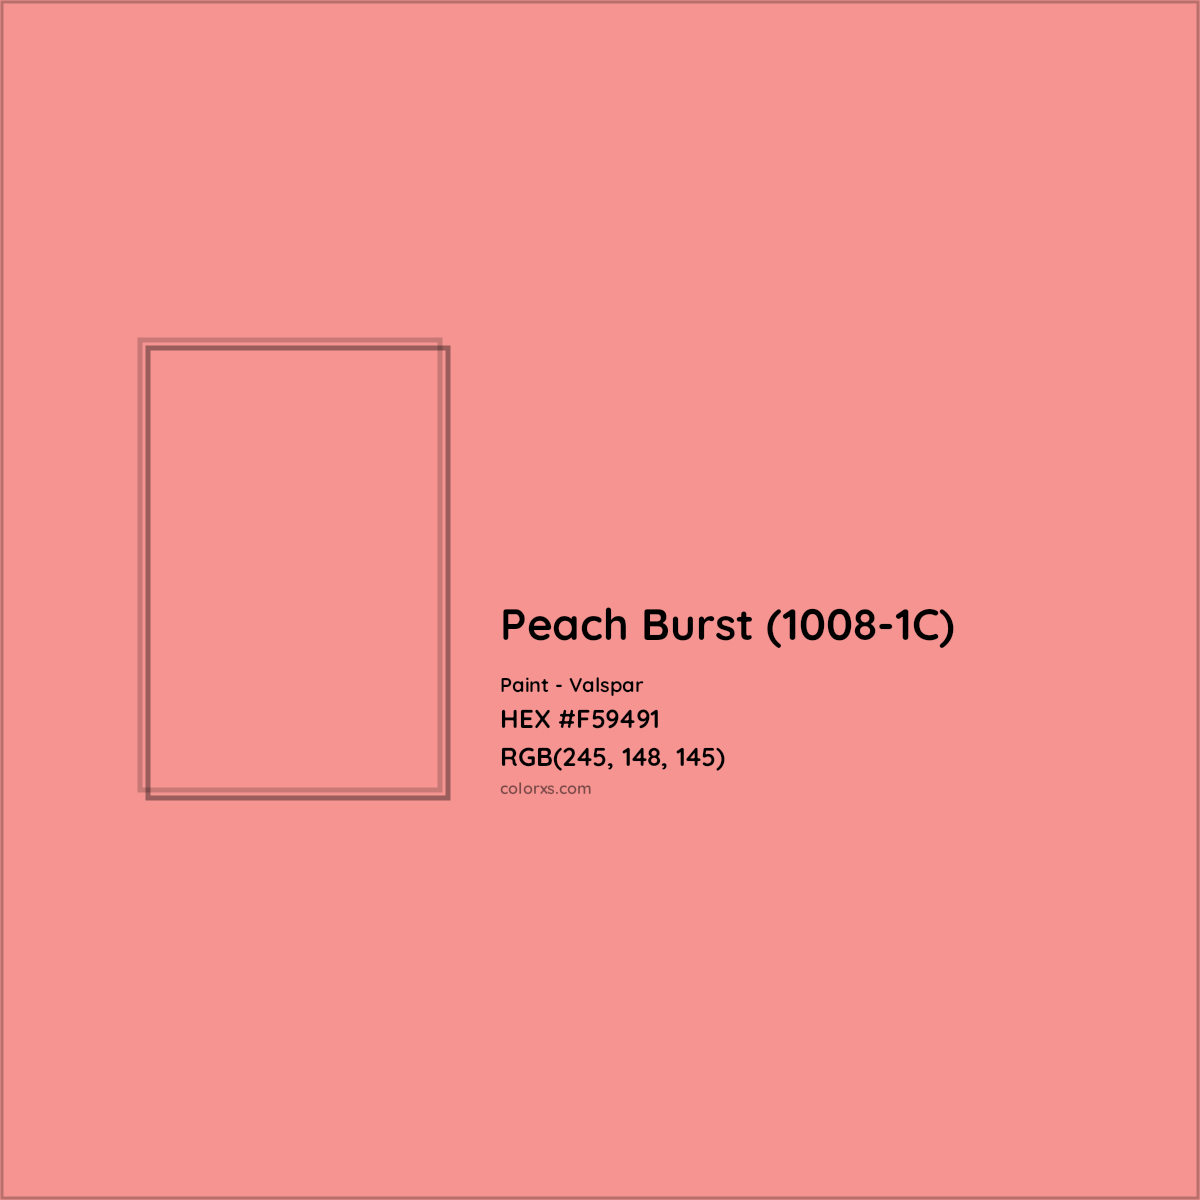 HEX #F59491 Peach Burst (1008-1C) Paint Valspar - Color Code